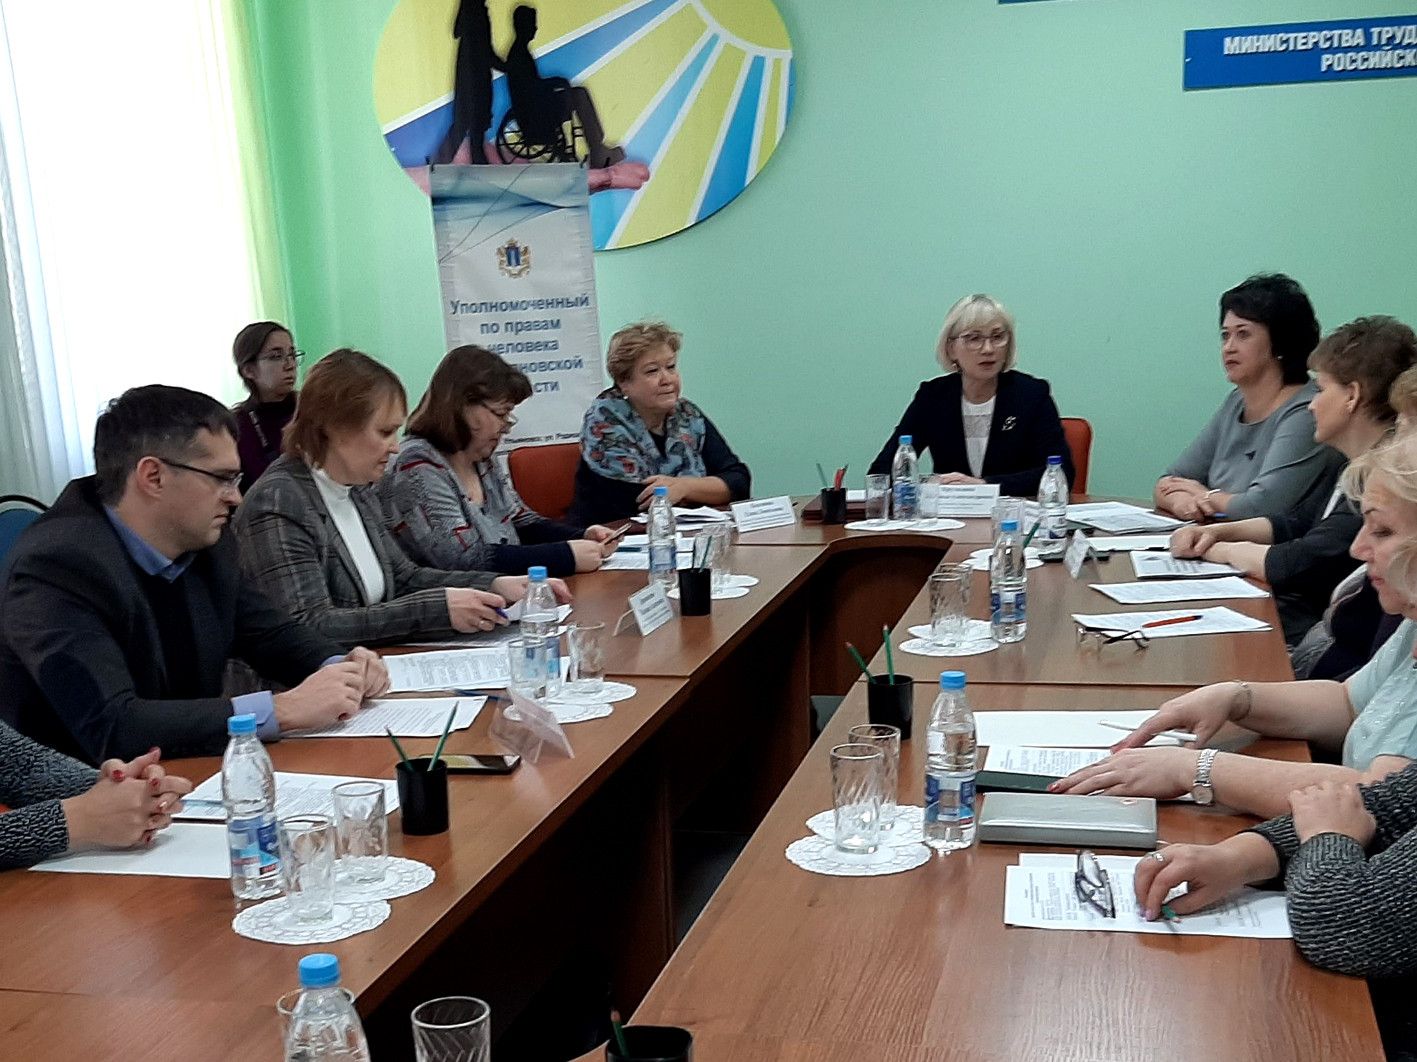 Соблюдаются ли права инвалидов? В Ульяновске обсудили проблемы людей с ограниченными возможностями